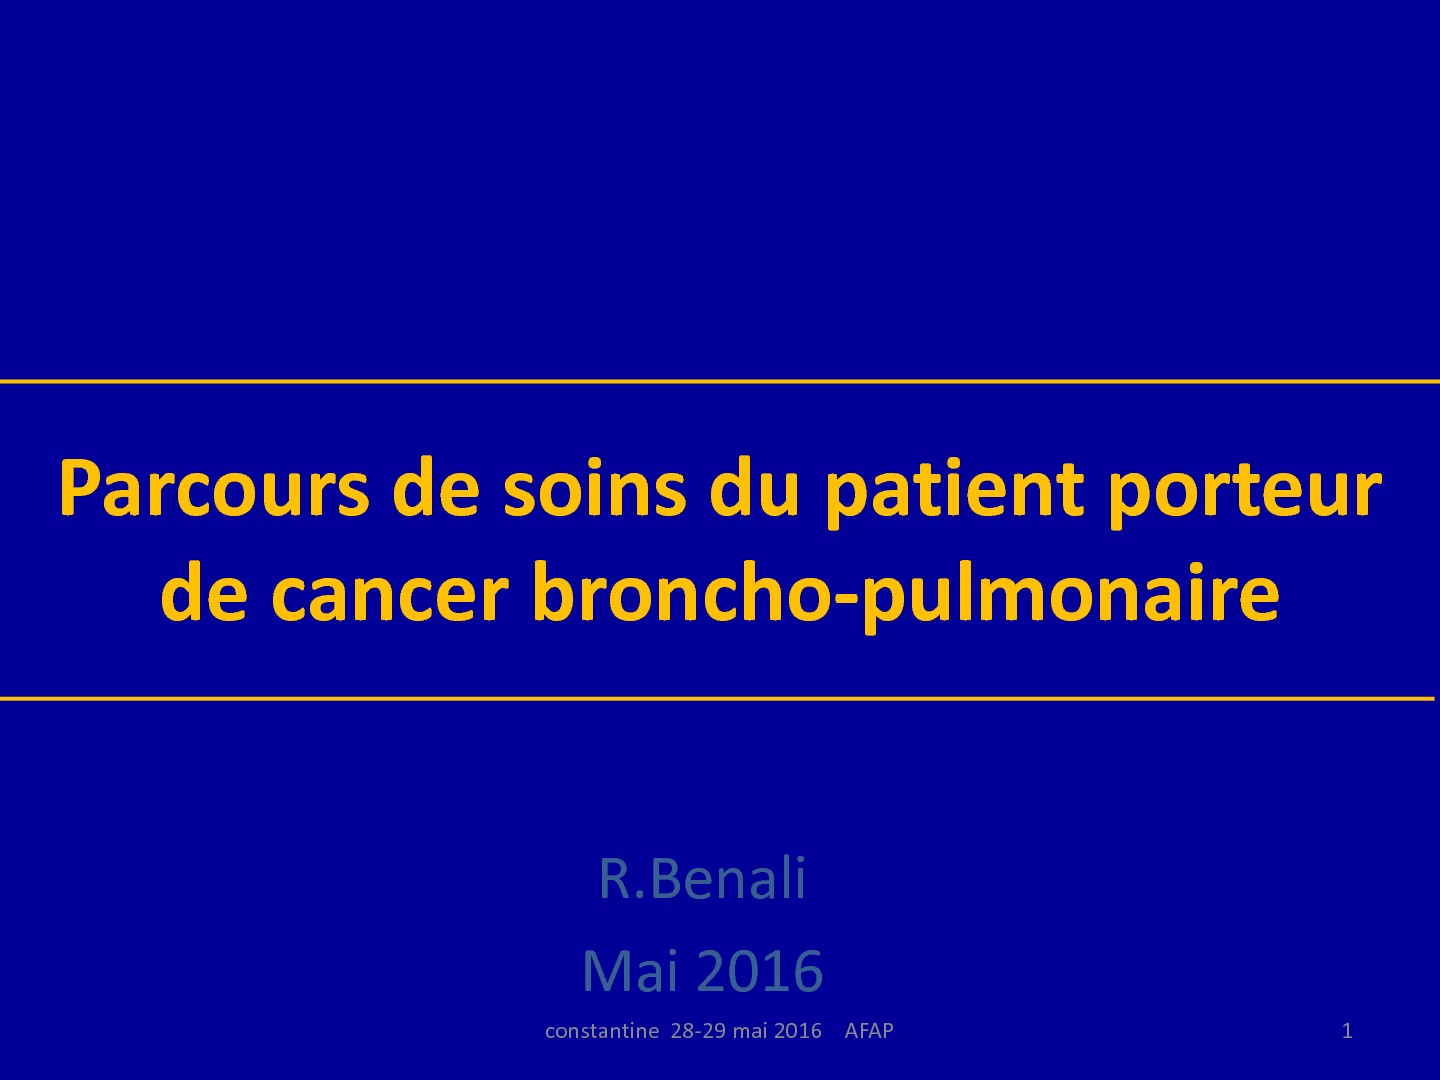 Parcours de soins du patient porteur de cancer broncho-pulmonaire. R. Ben Ali